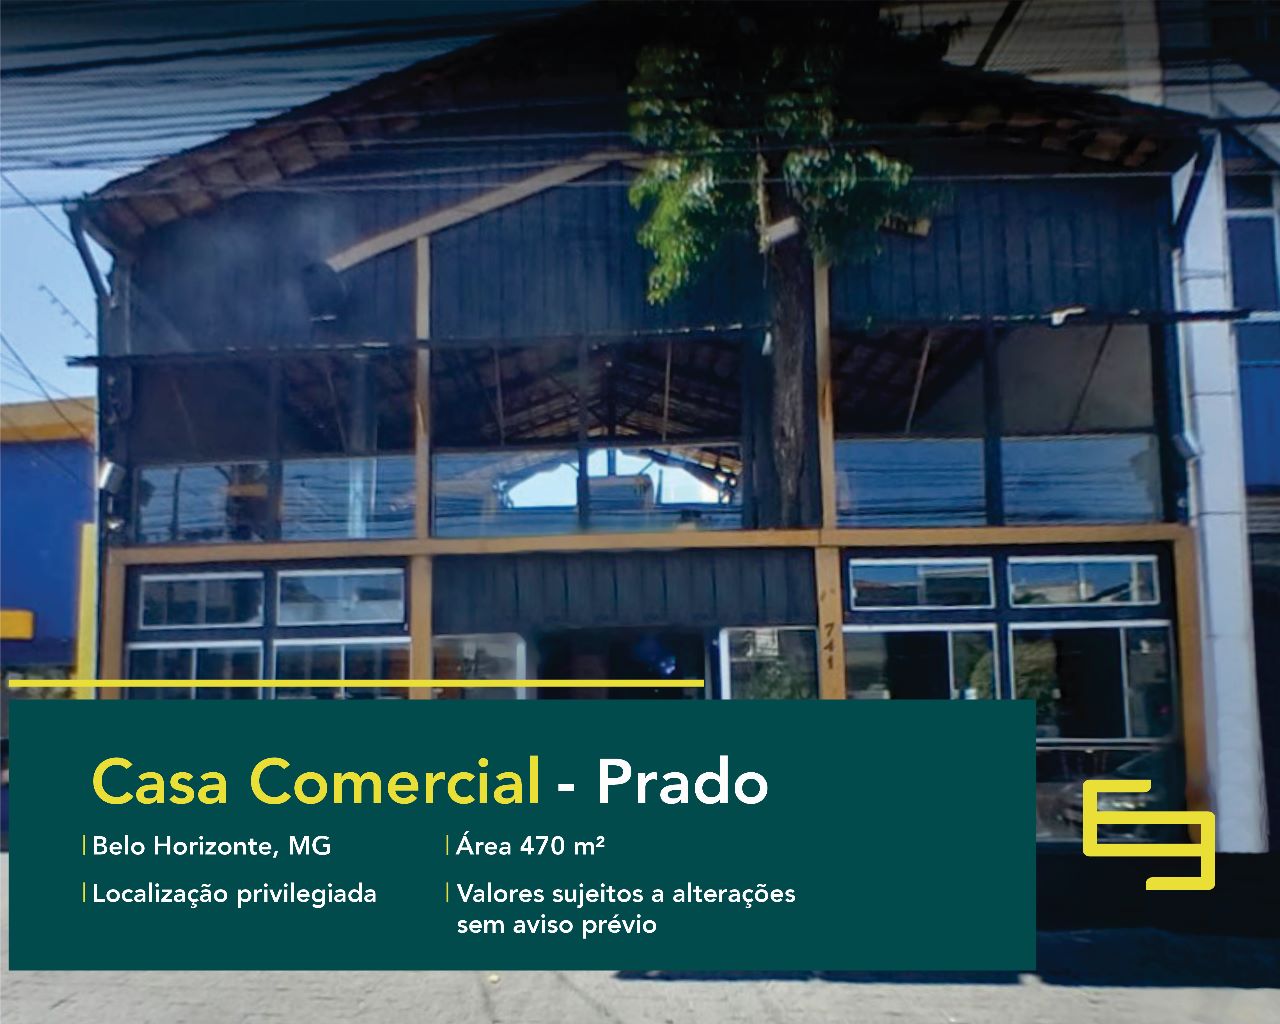 Casa comercial para vender no Prado em Belo Horizonte, excelente localização. O estabelecimento comercial conta com área de 470 m².